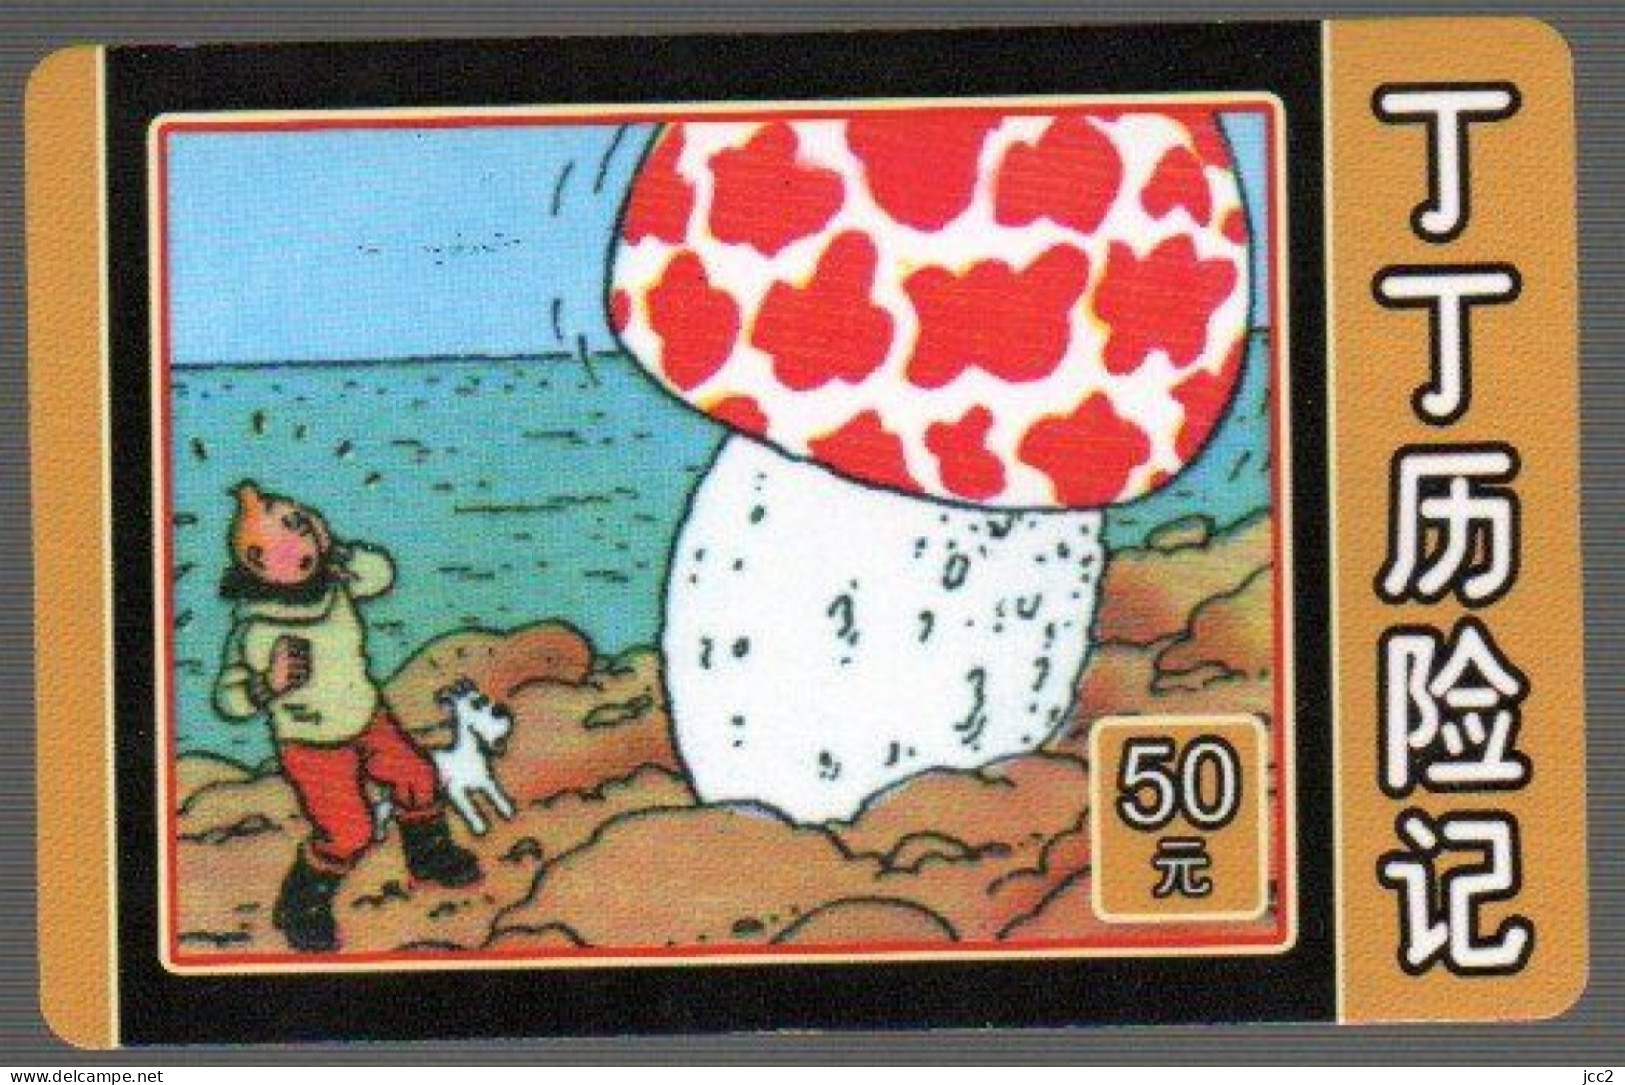 Tintin & Milou - Comics